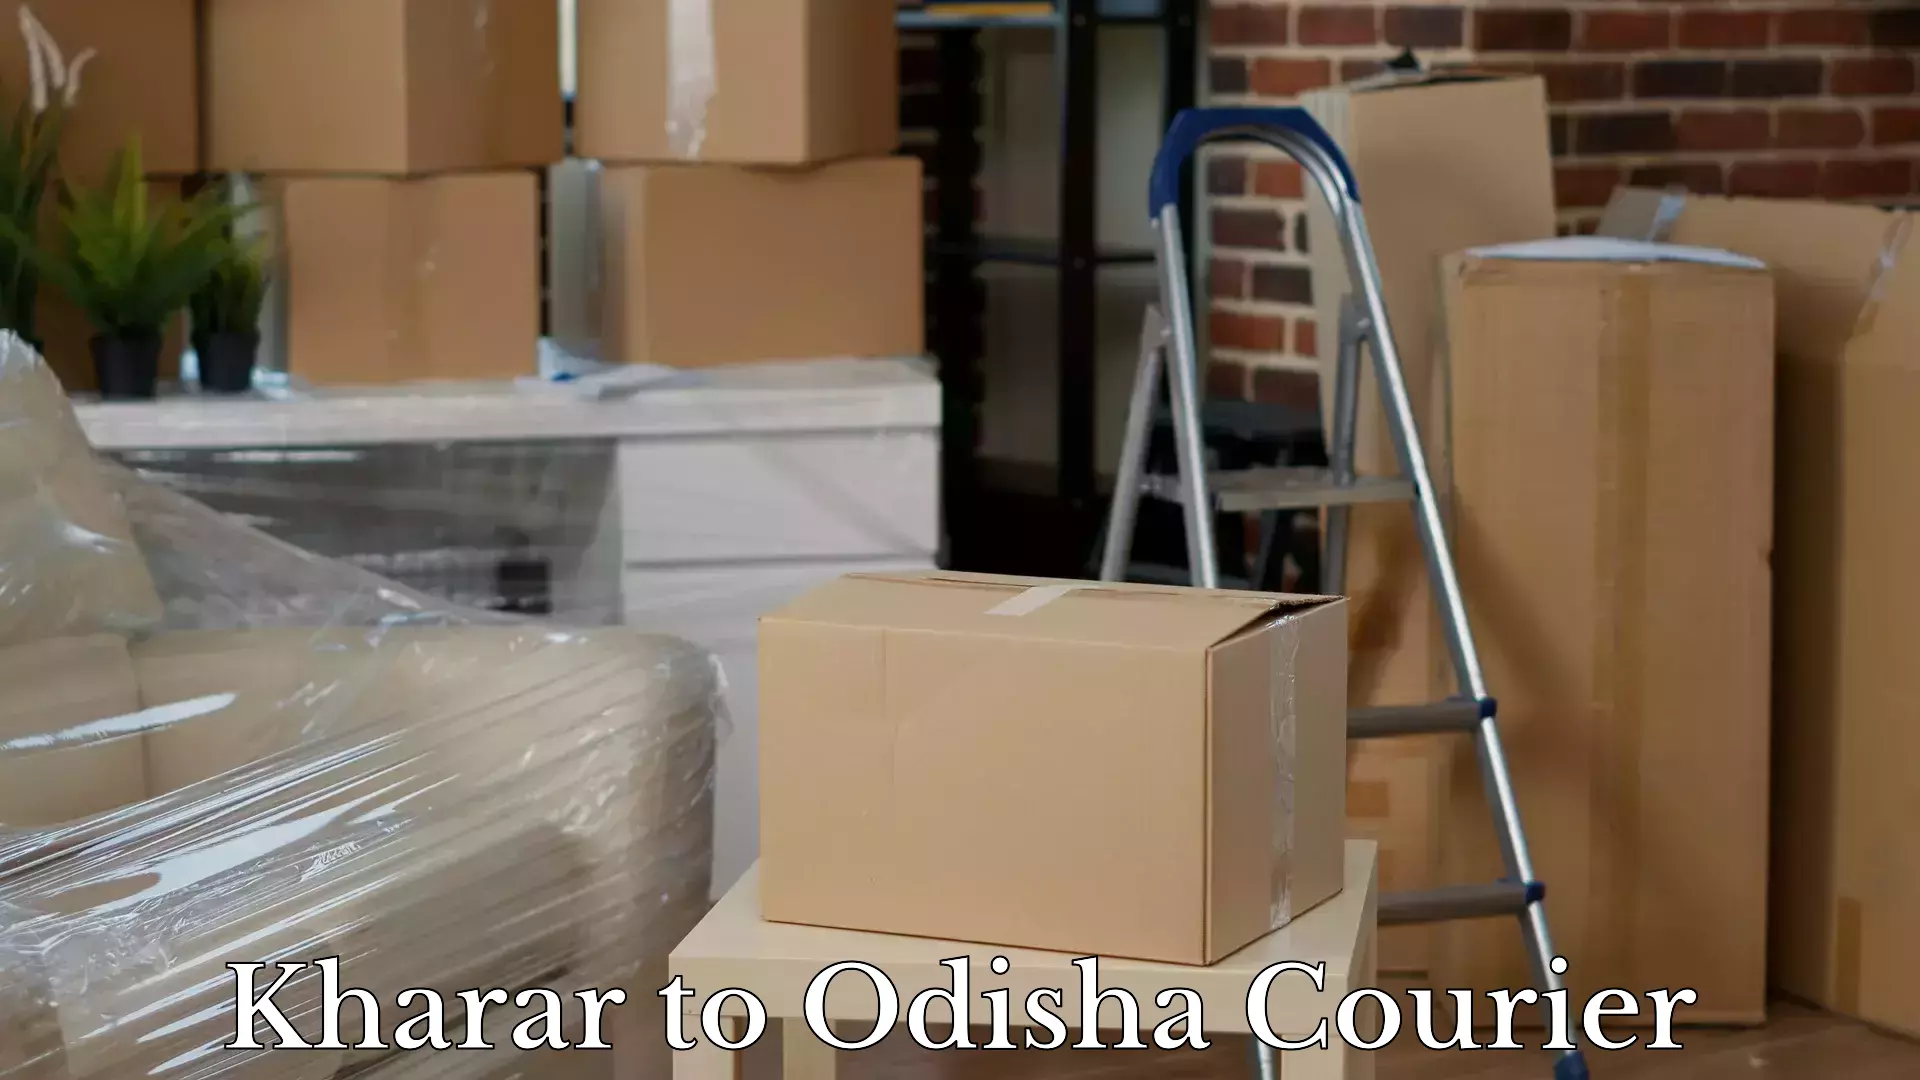 Baggage shipping experts Kharar to Sohela